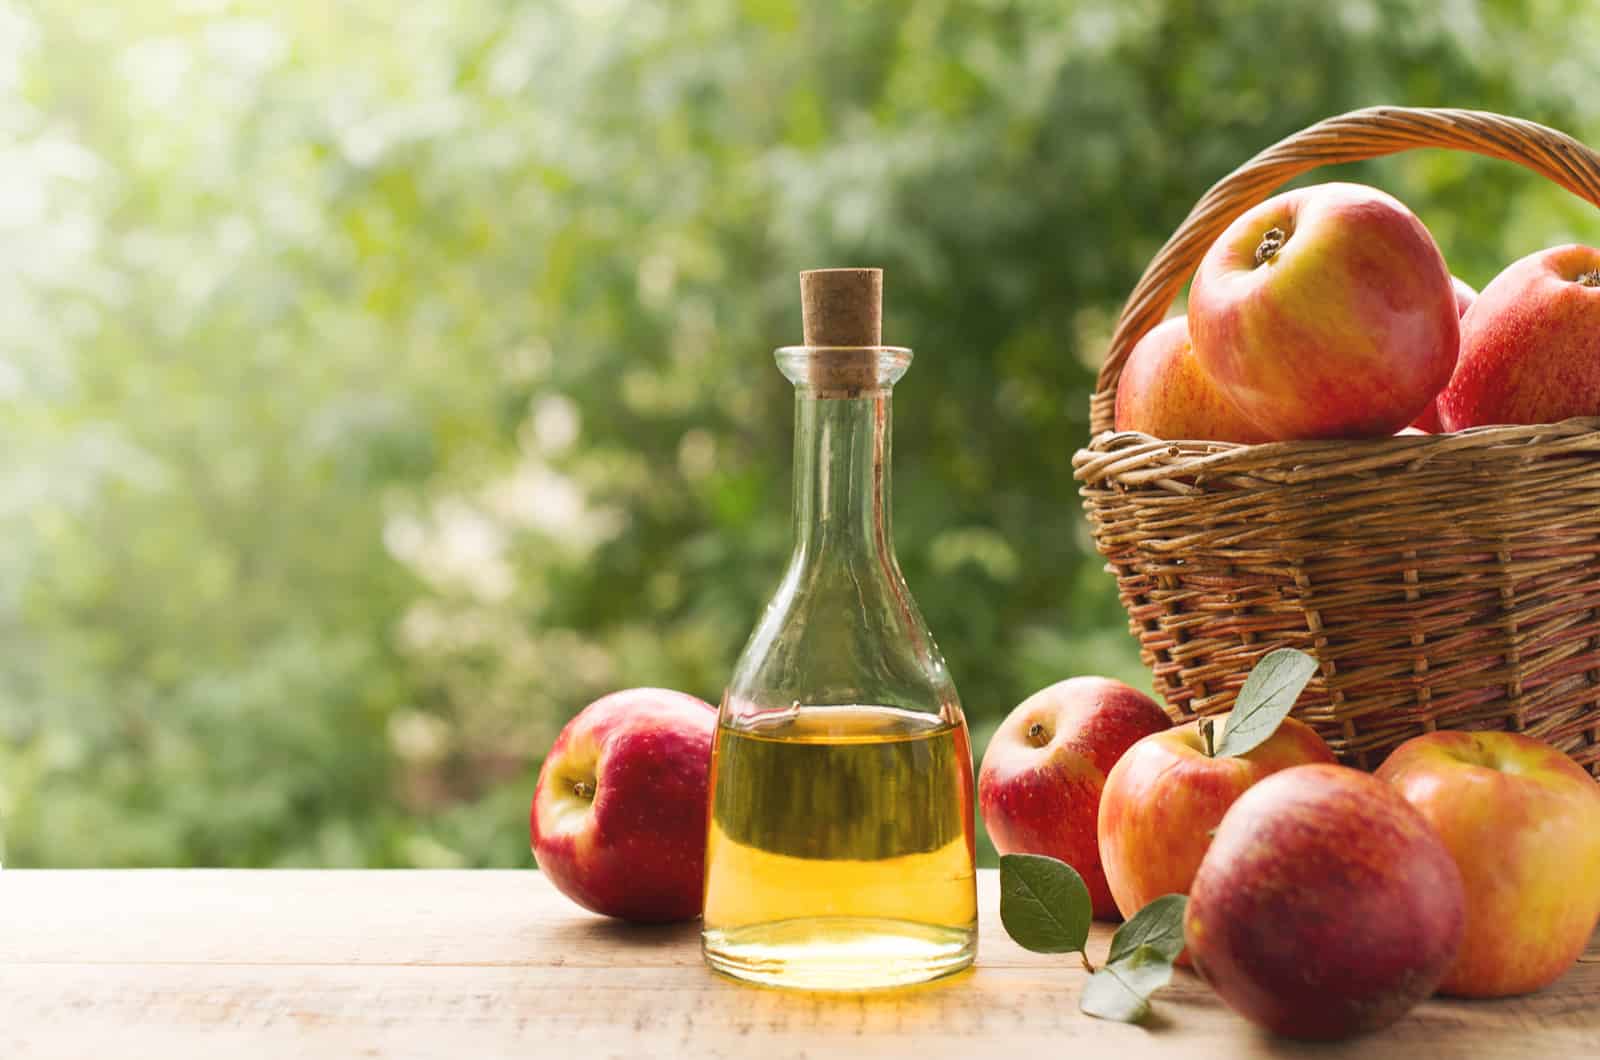 Apple cider vinegar in bottle with apples